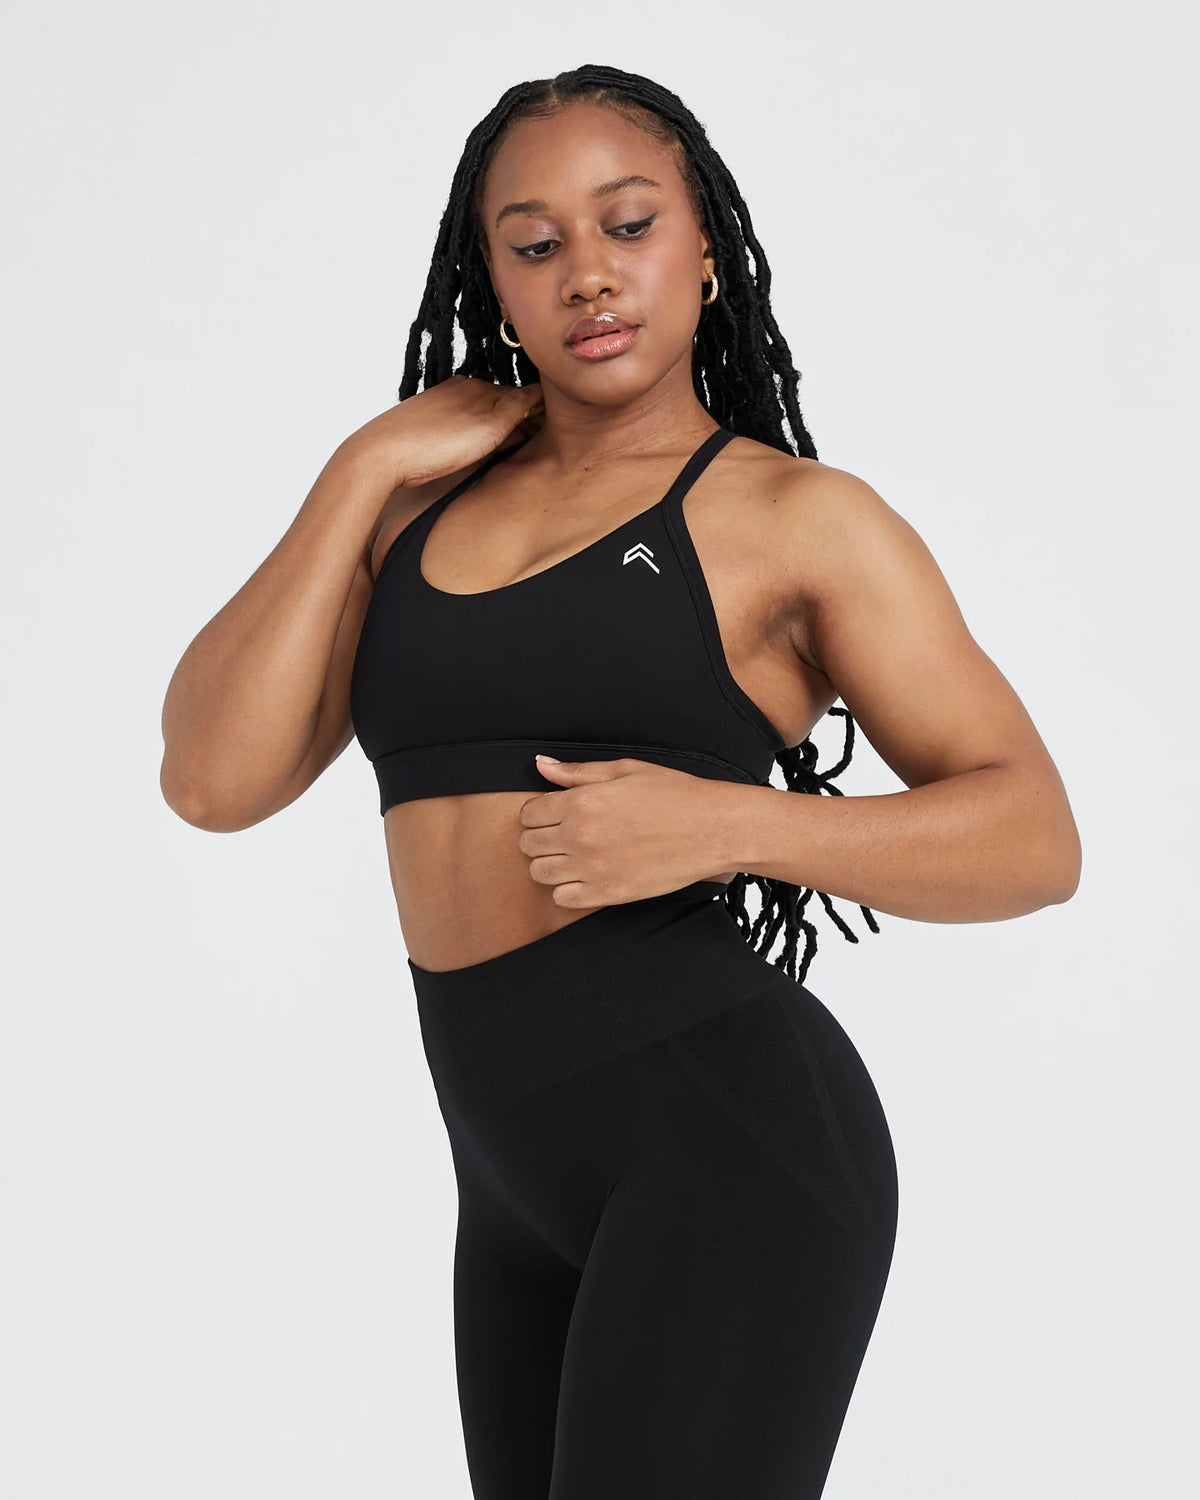 Ashton Sports Bra - Black - Large  Sports bra and leggings, Black leggings,  Sports bra set